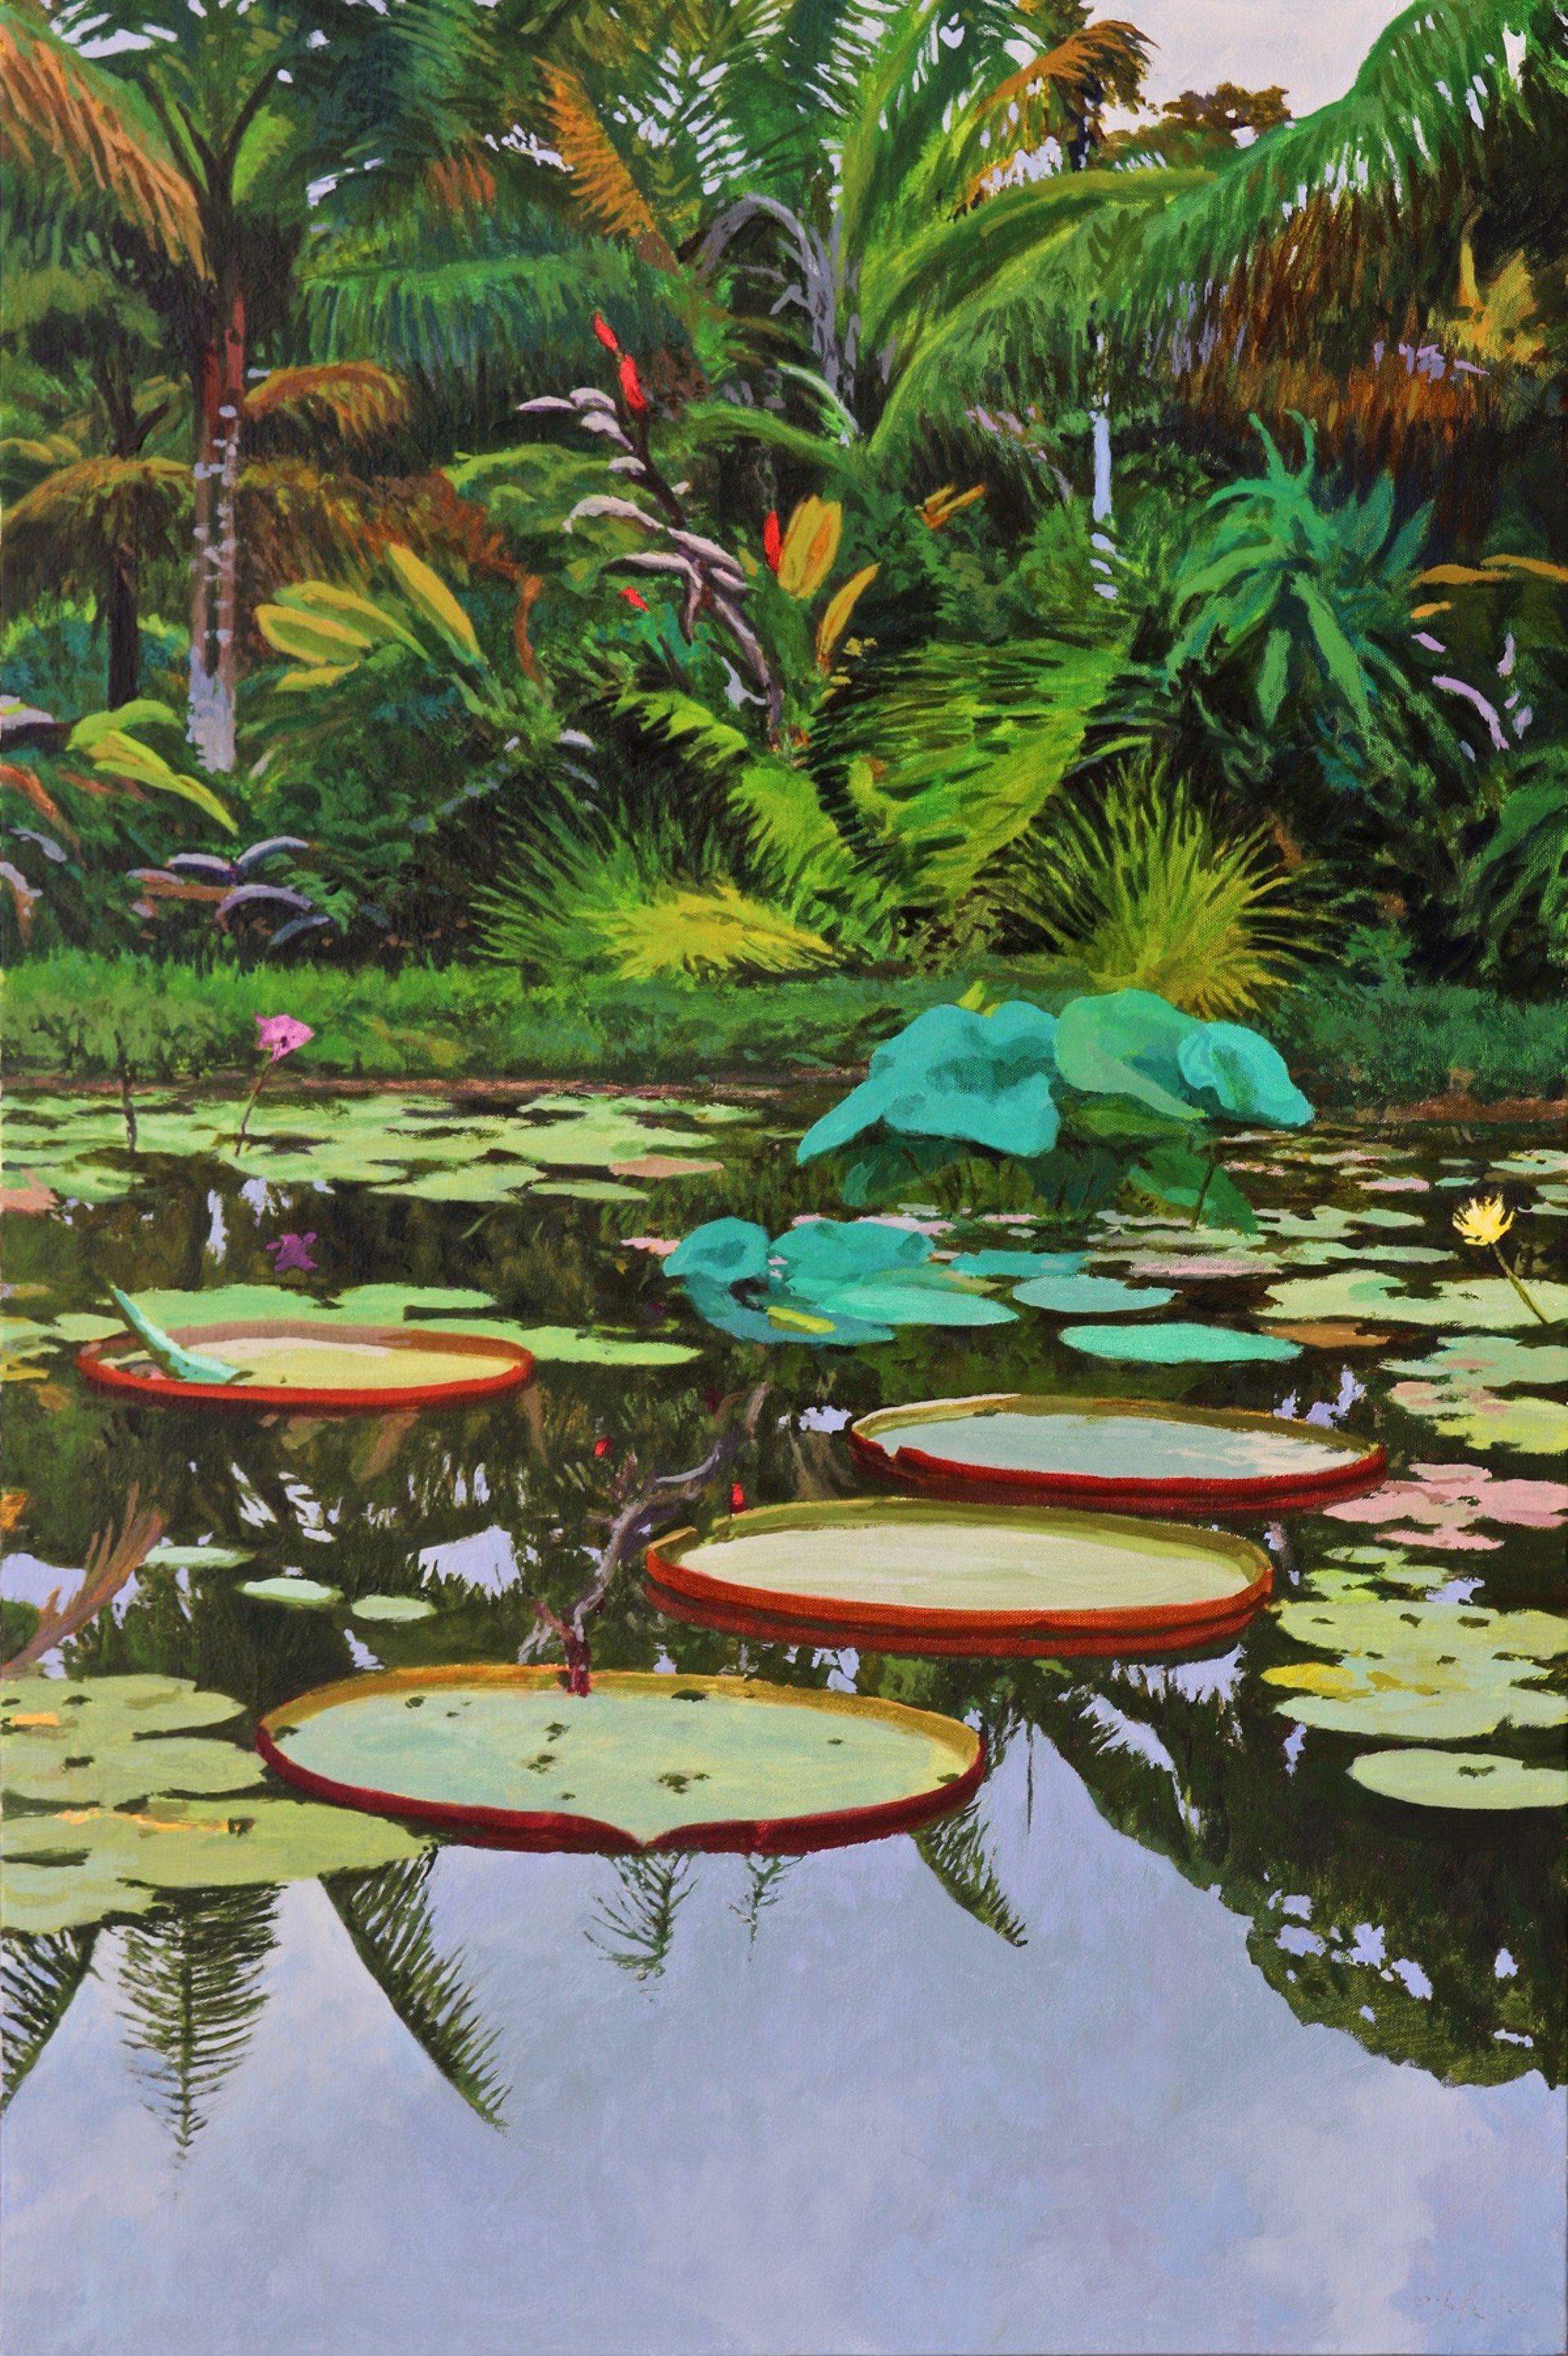 Lily Pond at Pana'ewa by Peter Loftus